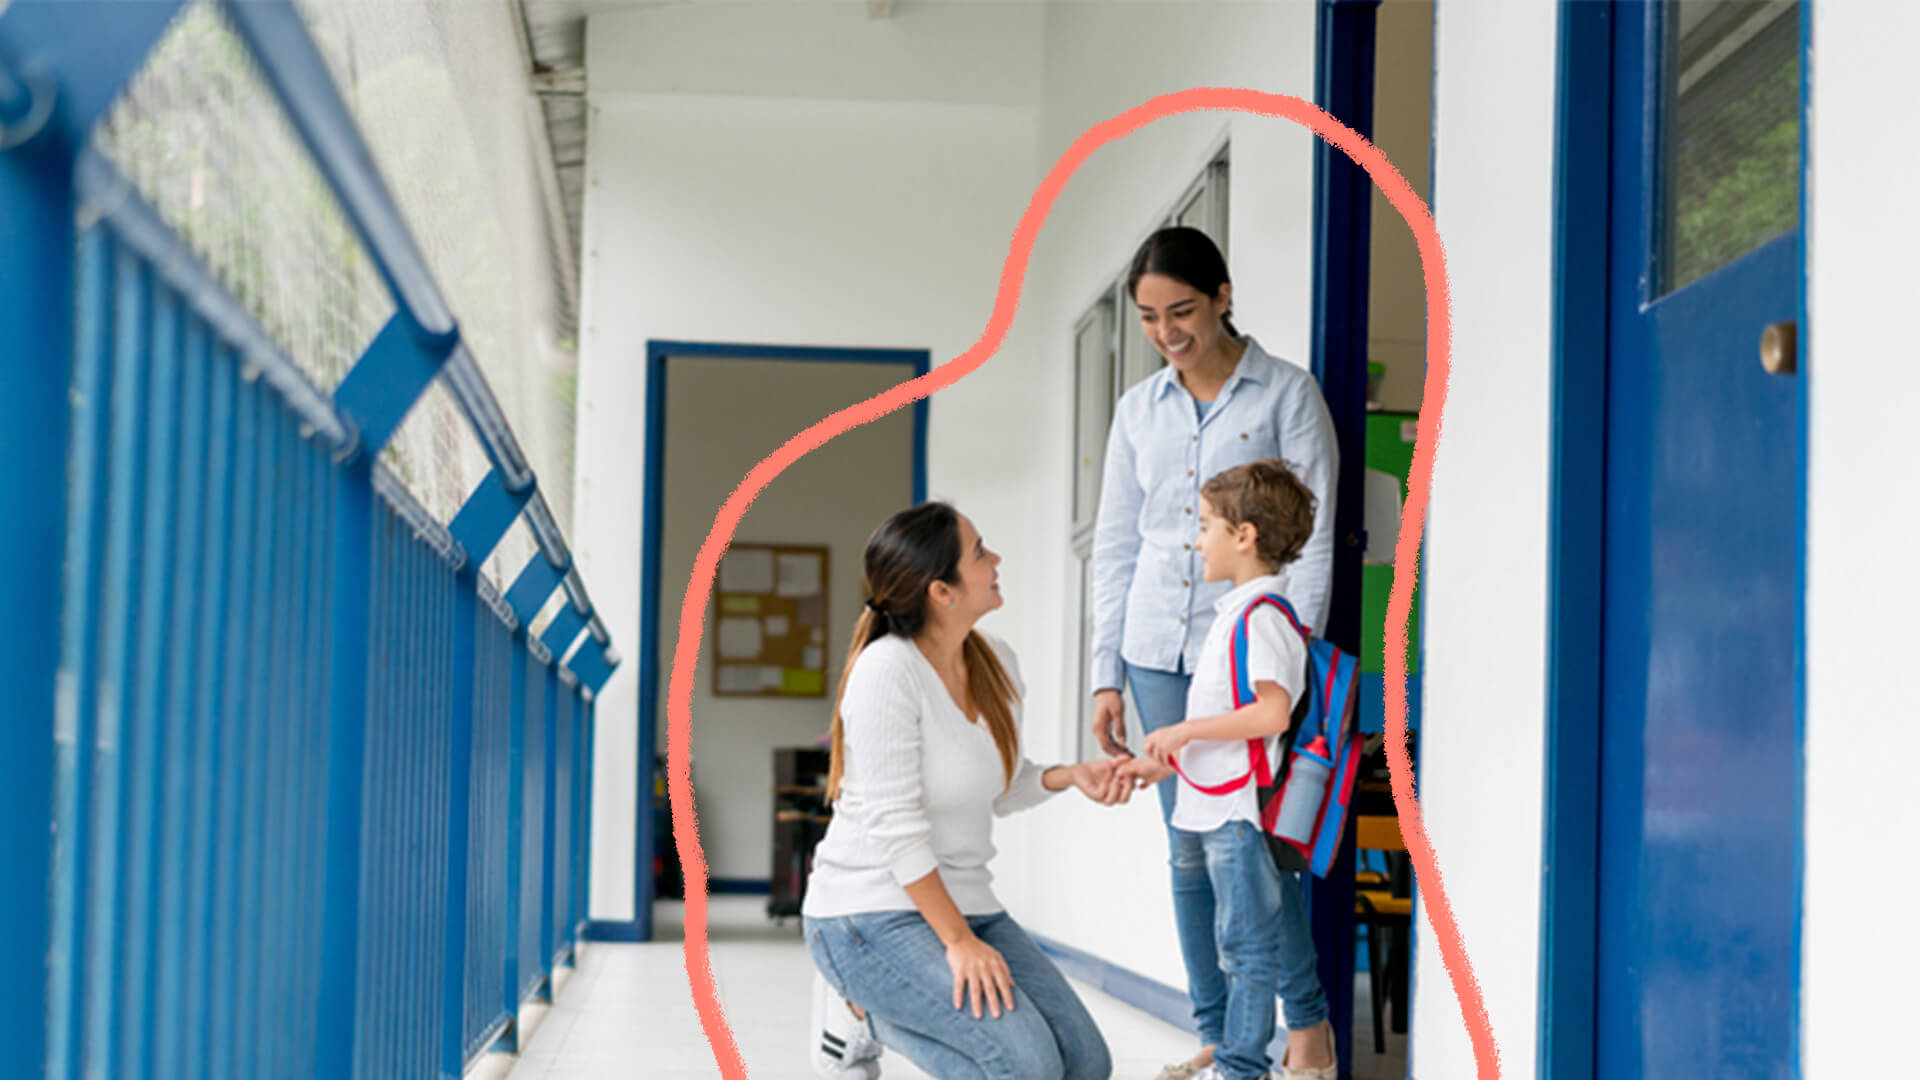 Duas mulheres conversando com um menino no corredor de uma escola